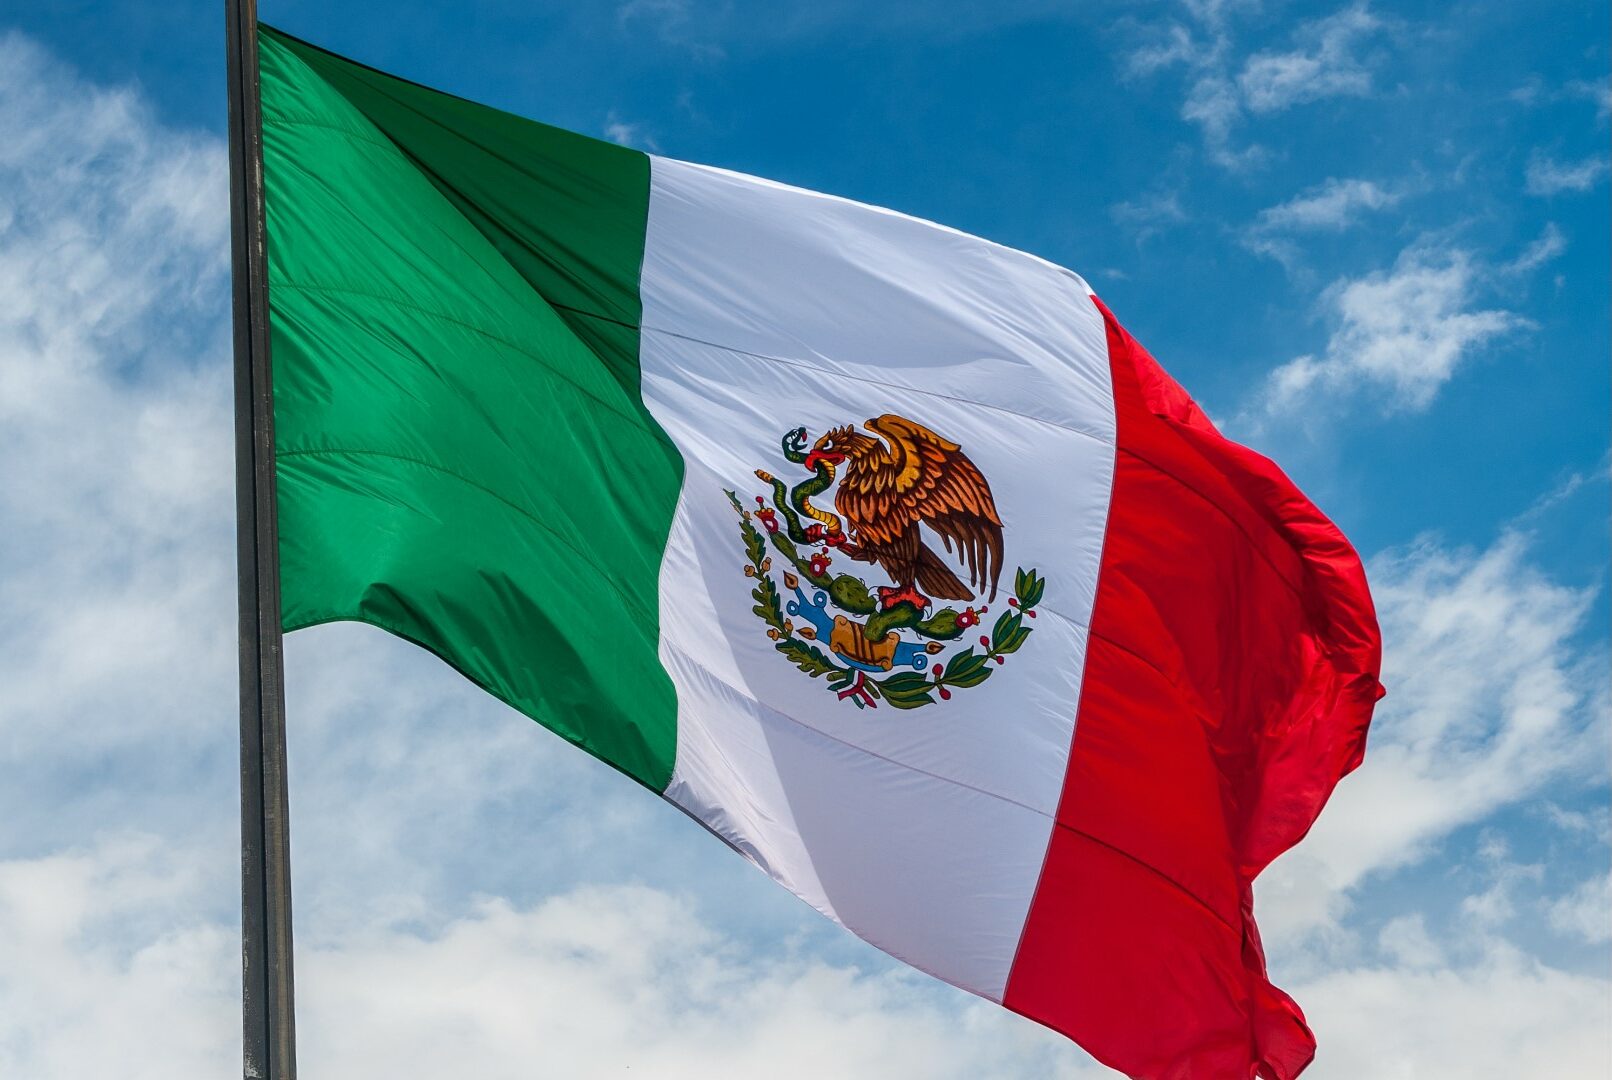 Día de la Bandera: Independence, Blood of Mexican Heroes and more.